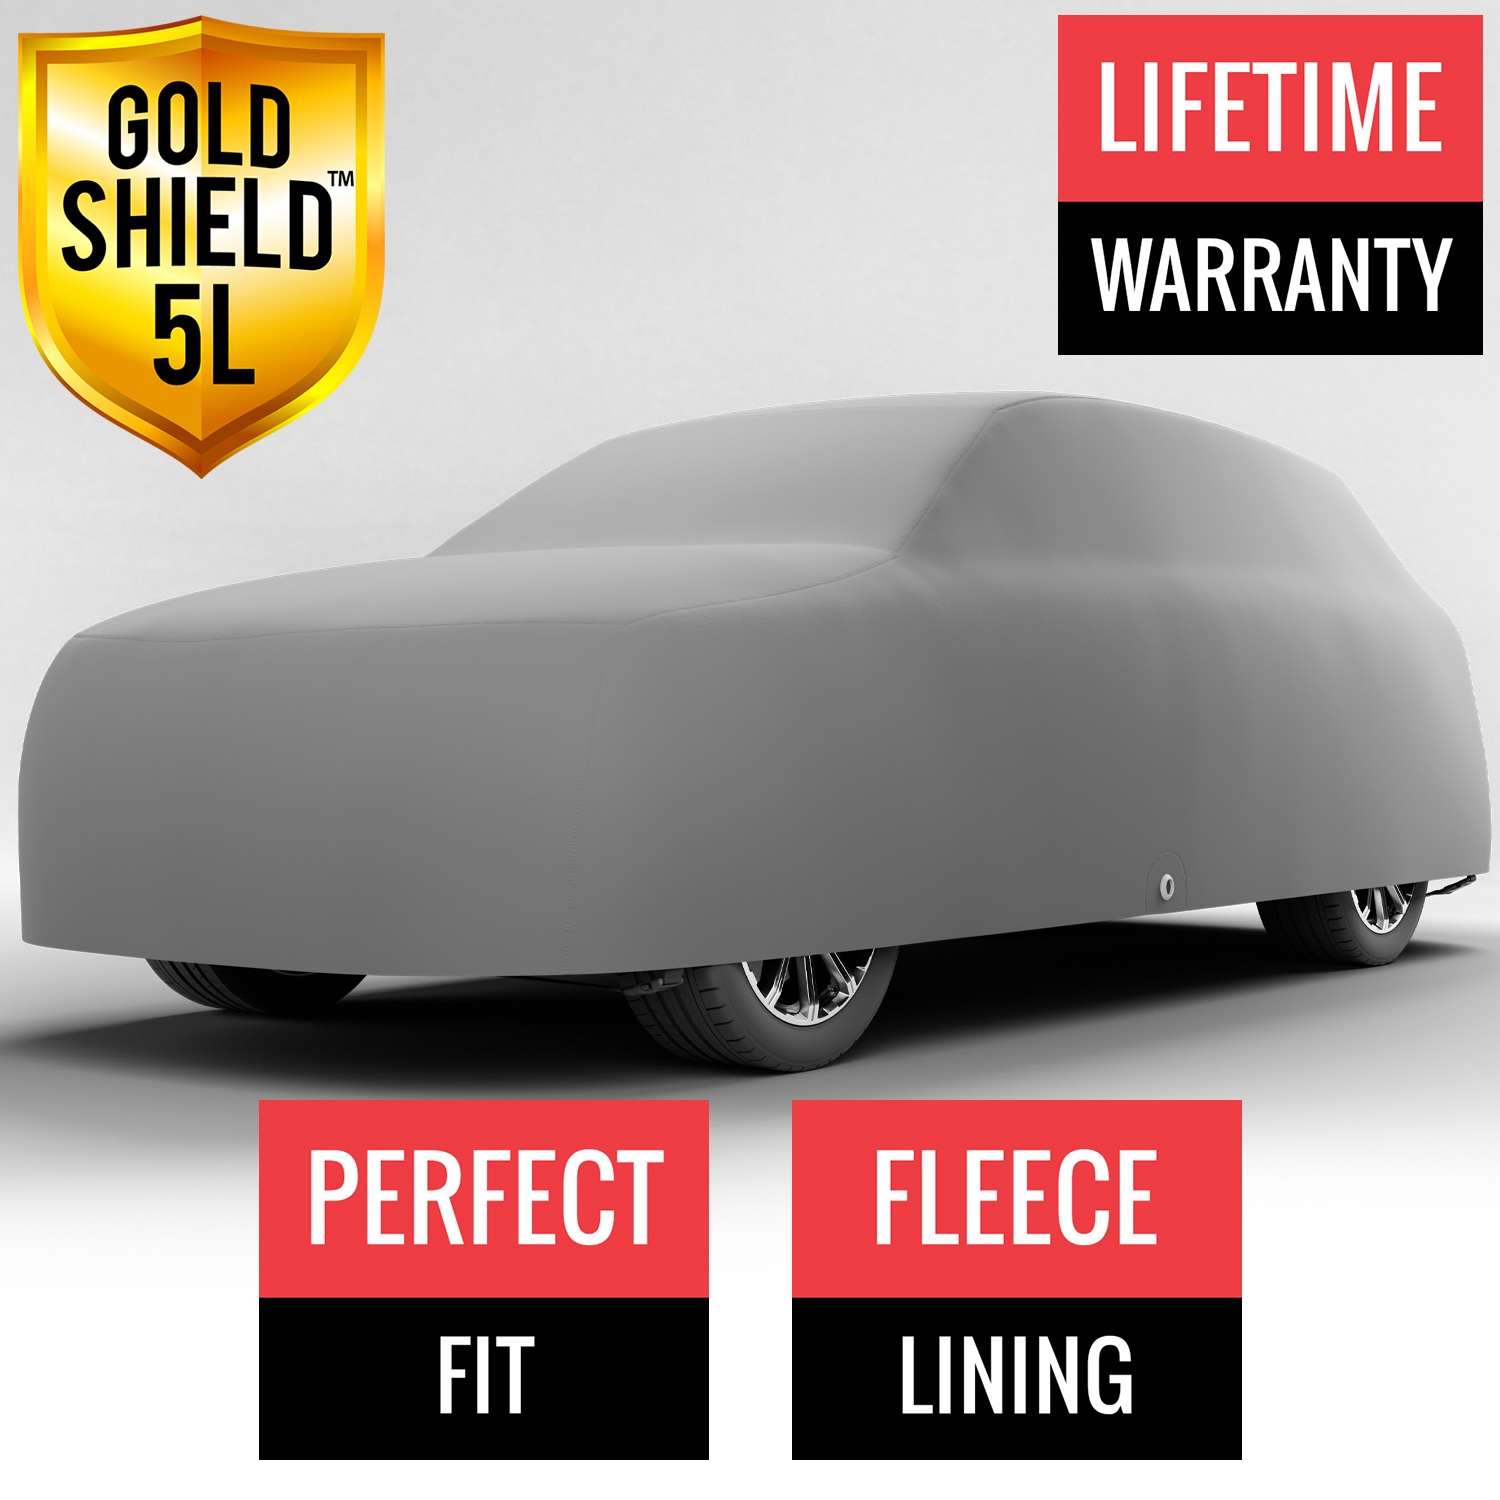 Gold Shield 5L - Car Cover for Hyundai Palisade 2019 SUV 4-Door